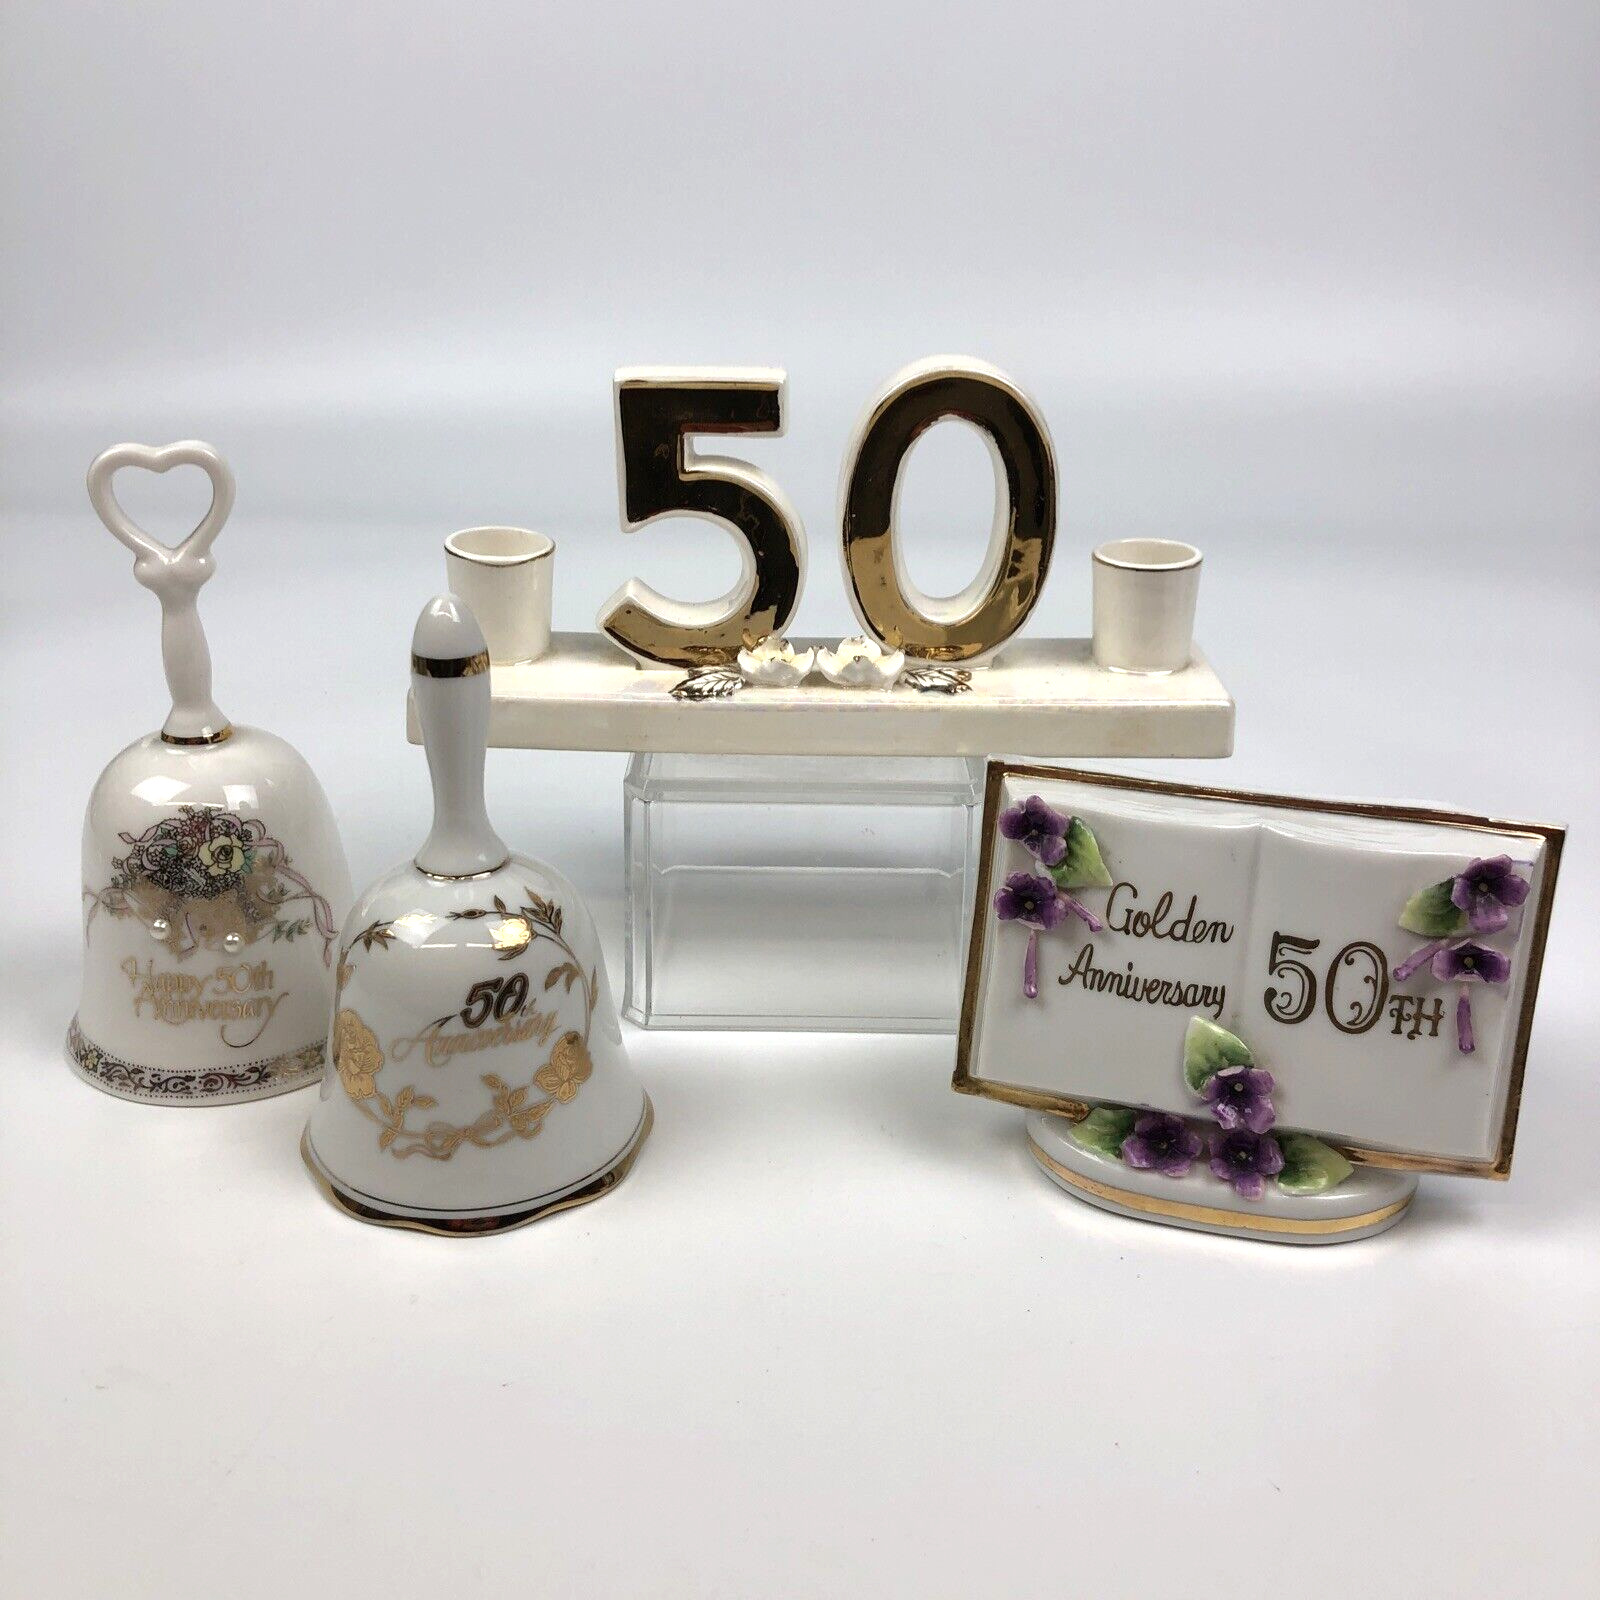 X4 VTG Norcrest Japan 50th Anniversary Candle Holder & 2 Bells Planter Japan